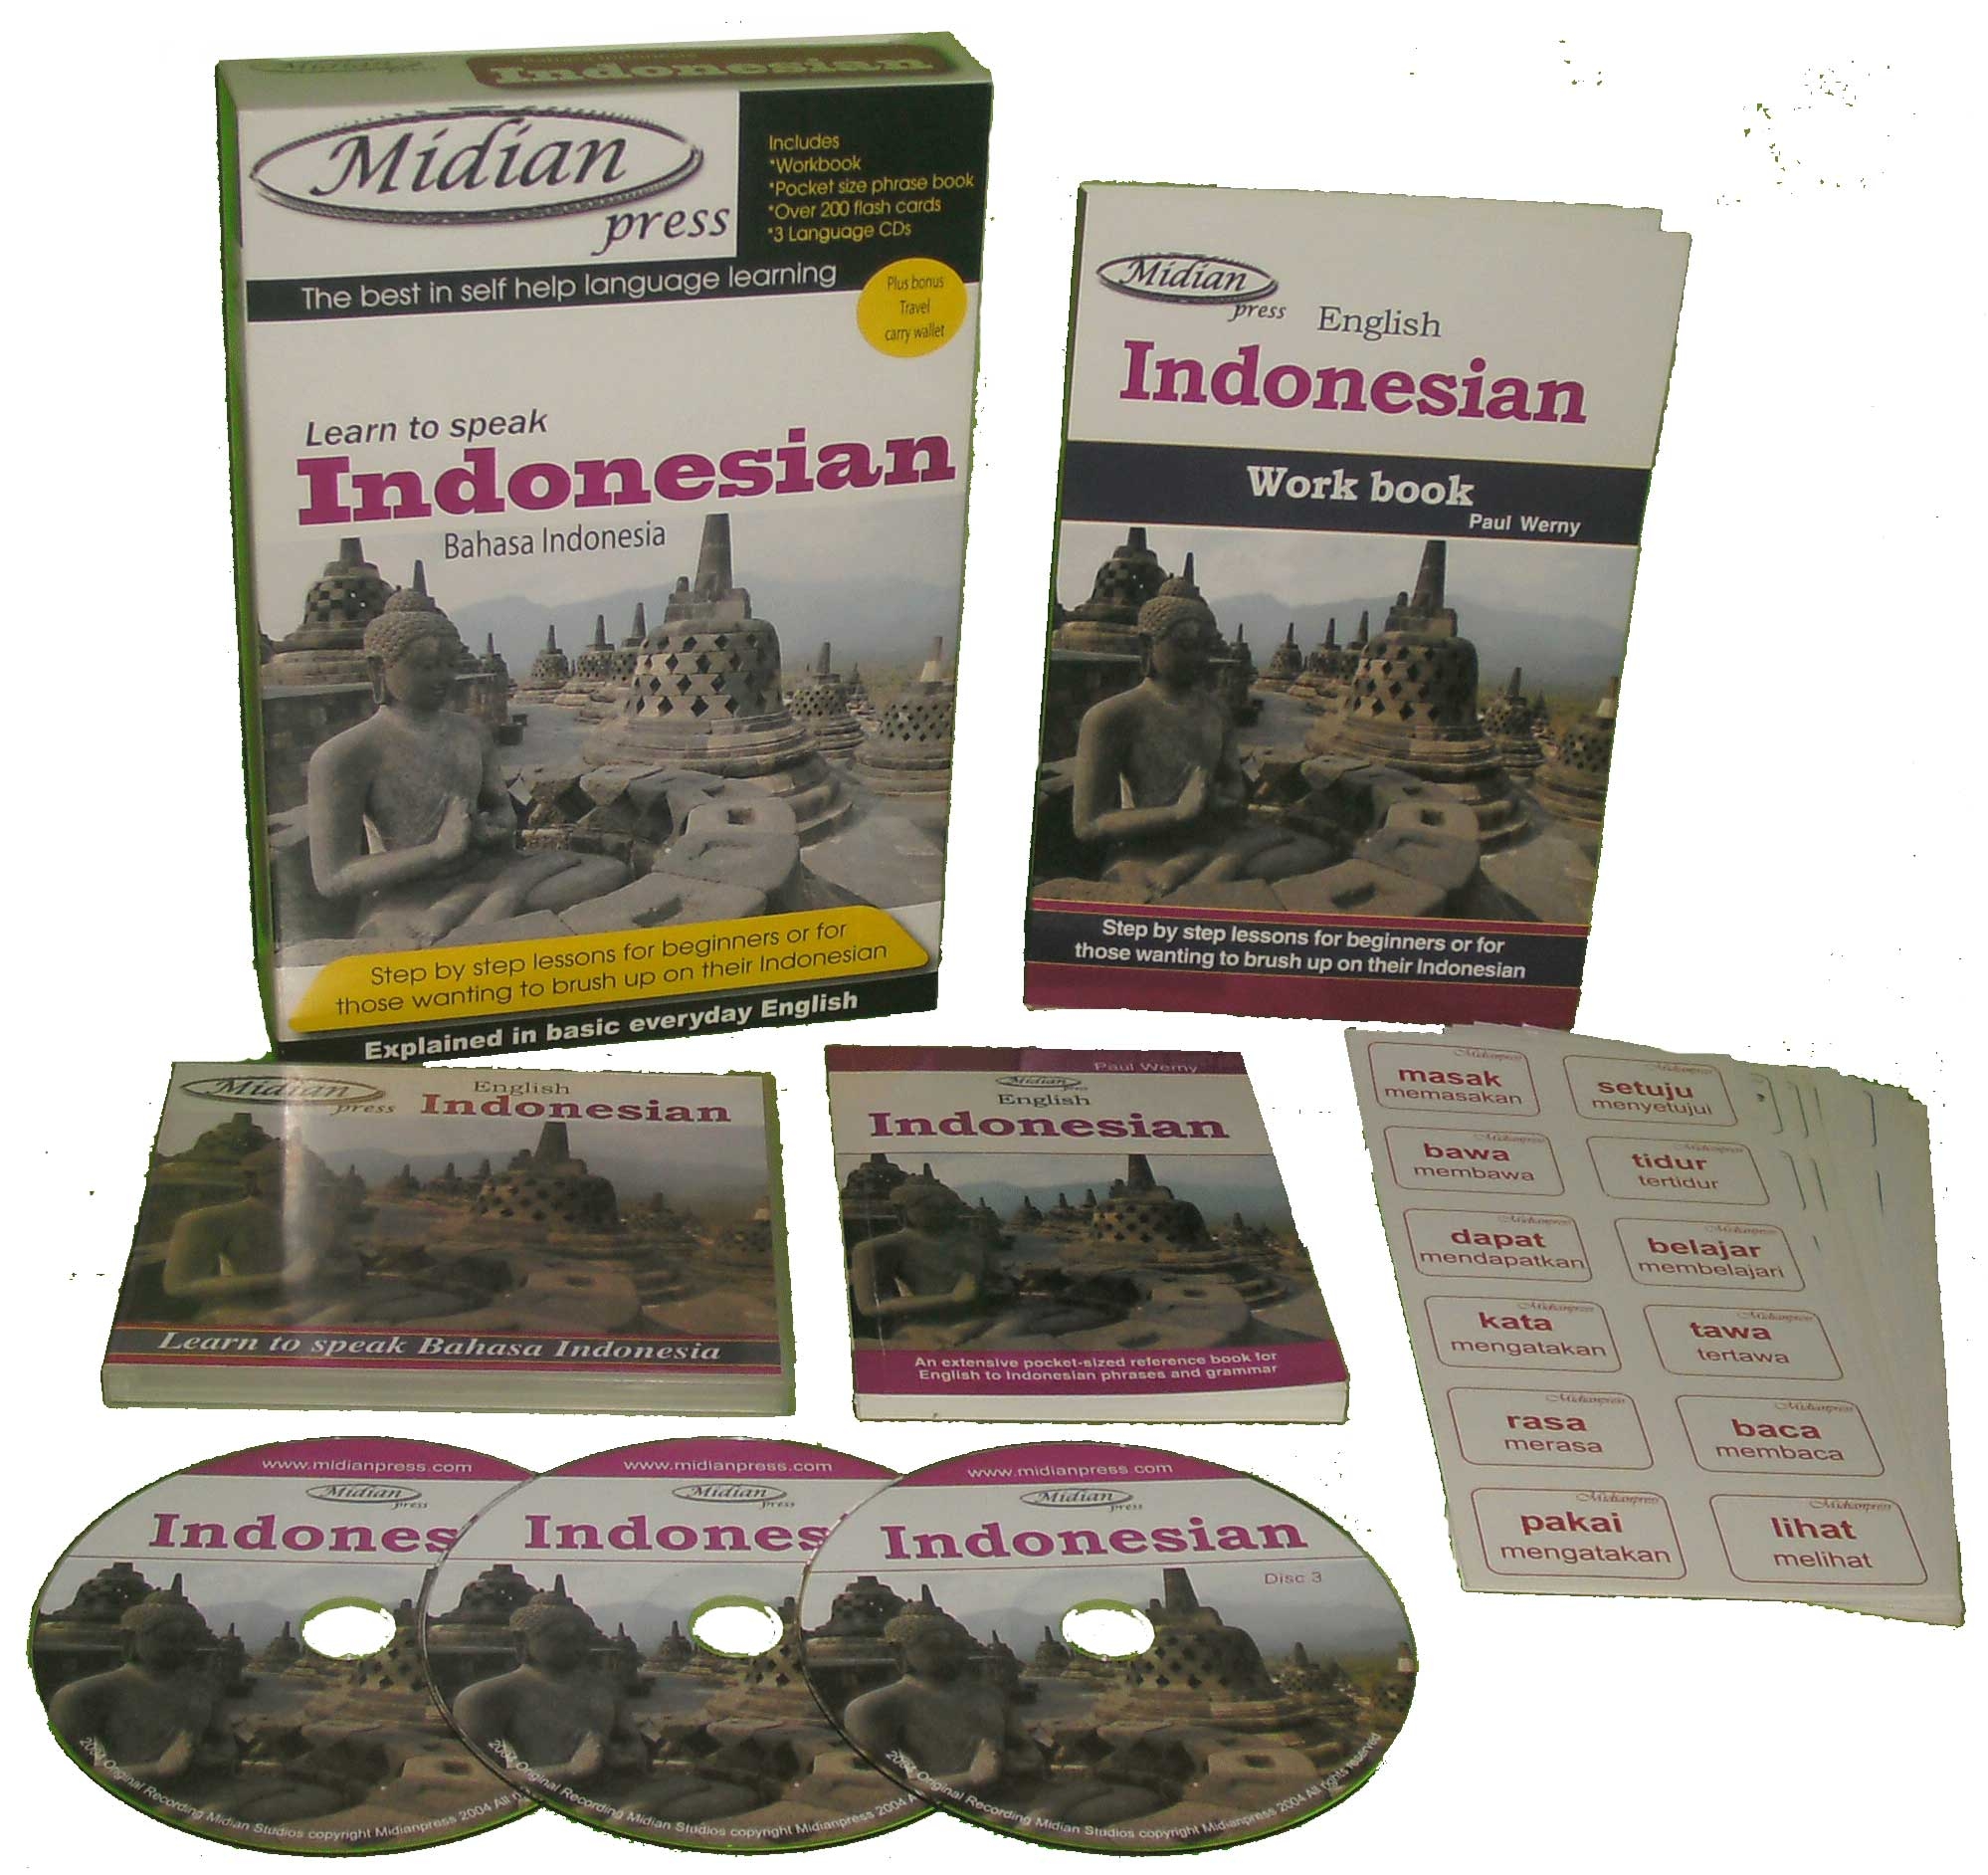 learn-to-speak-indonesian-full-set-1409365509-jpg